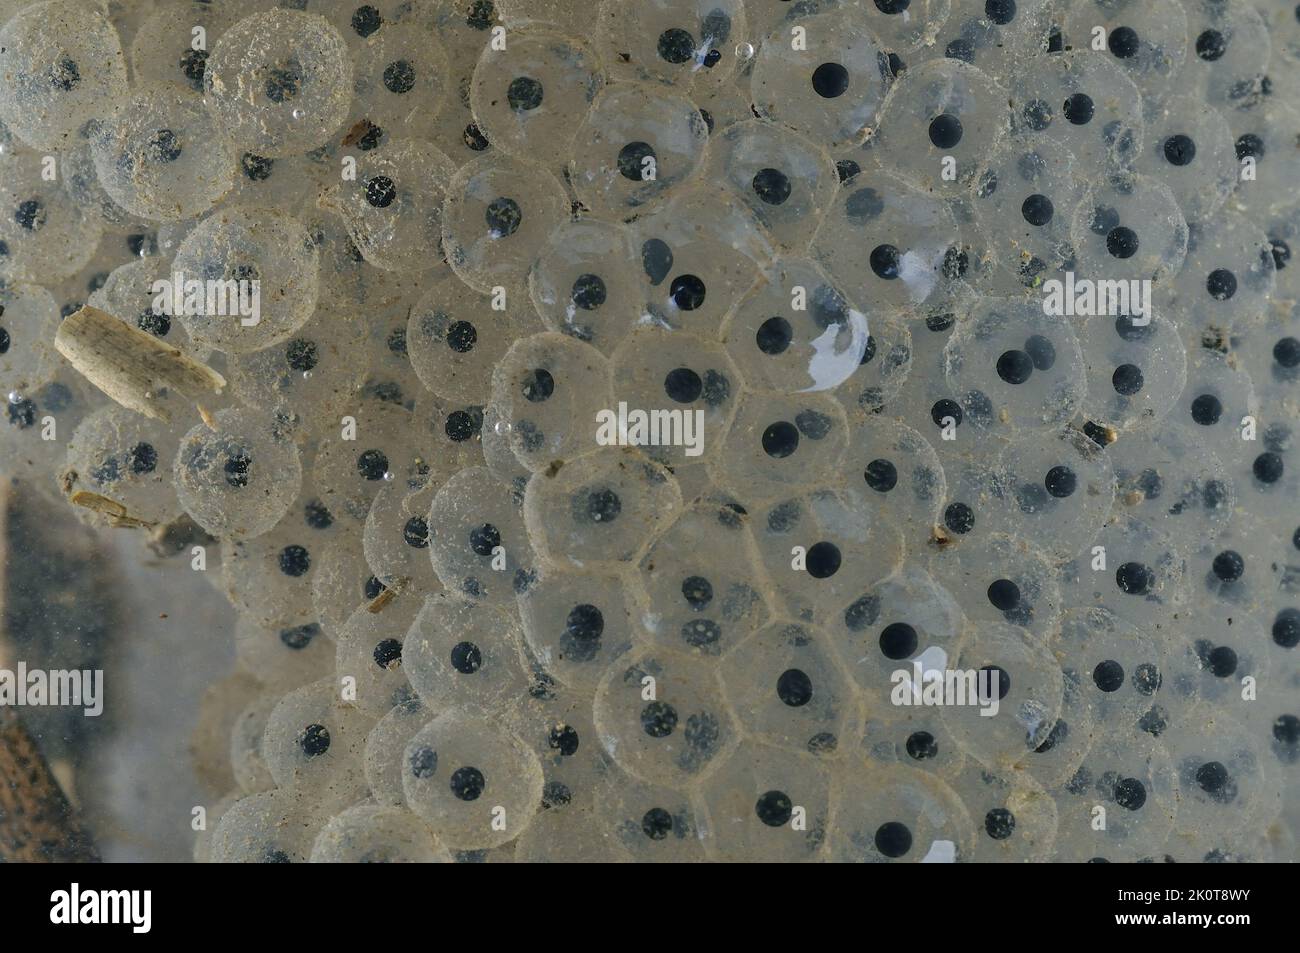 Rana comune (Rana temporaria) raggruppamenti di uova - embrioni dopo 3 giorni Foto Stock